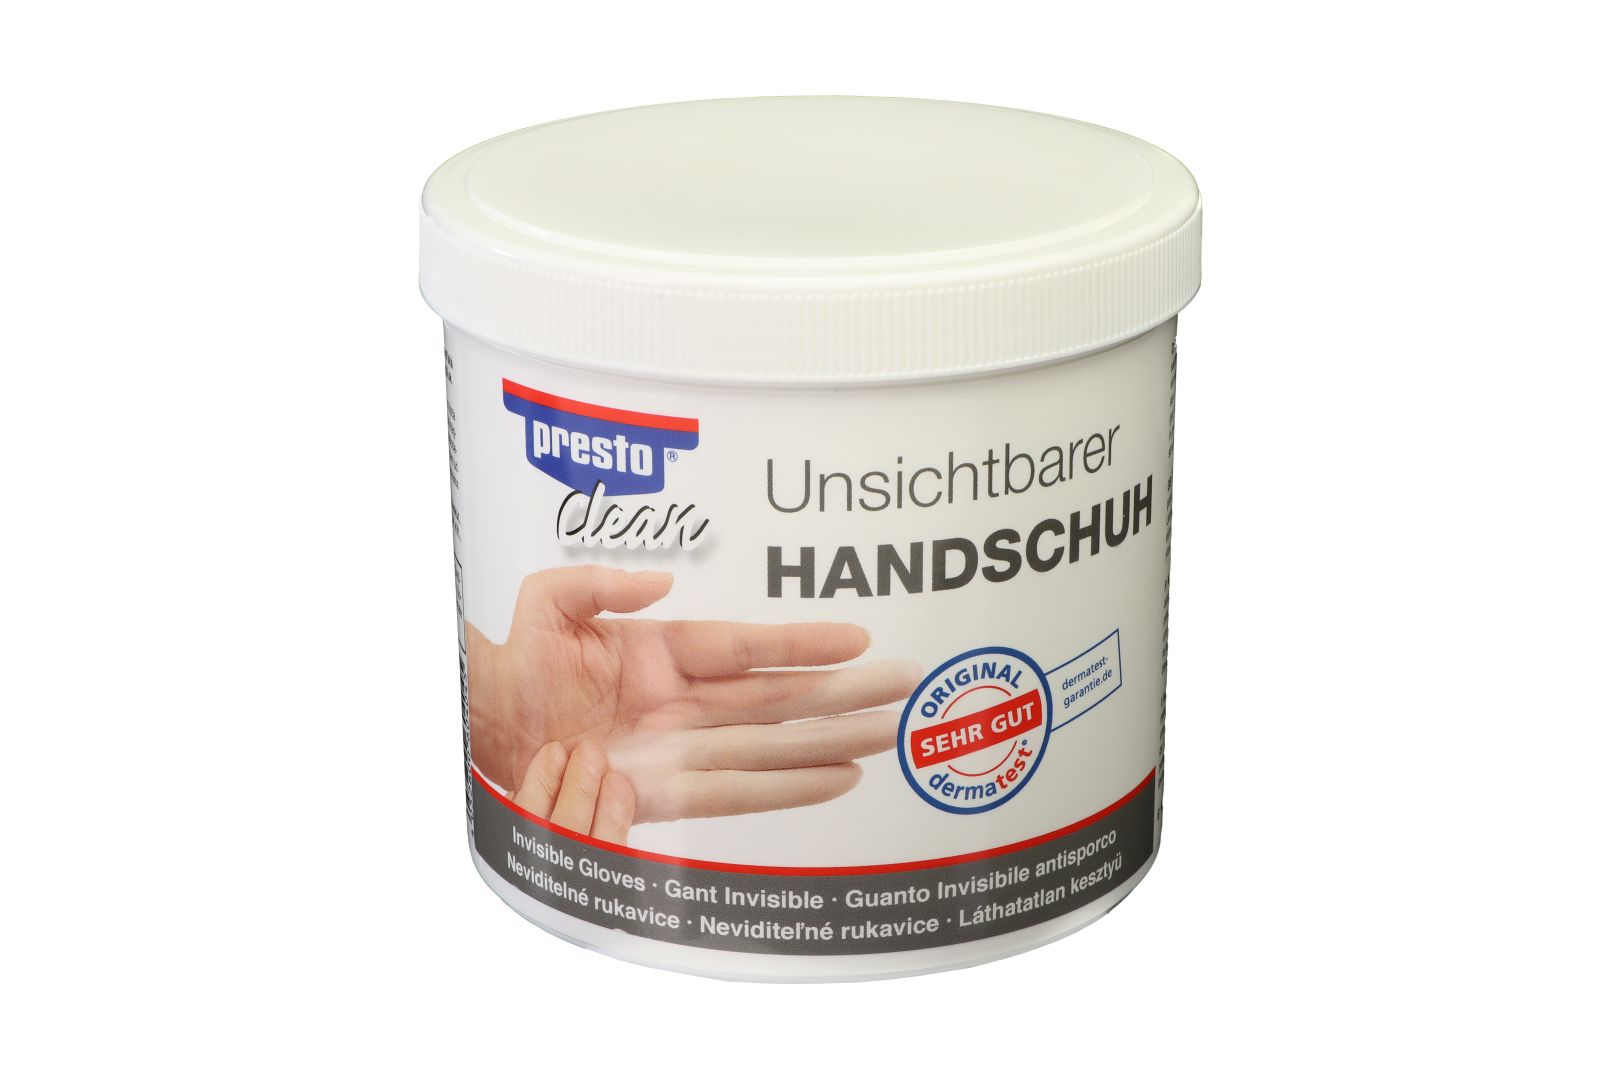 presto clean, unsichtbarer Handschuh, 650 ml in der Dose